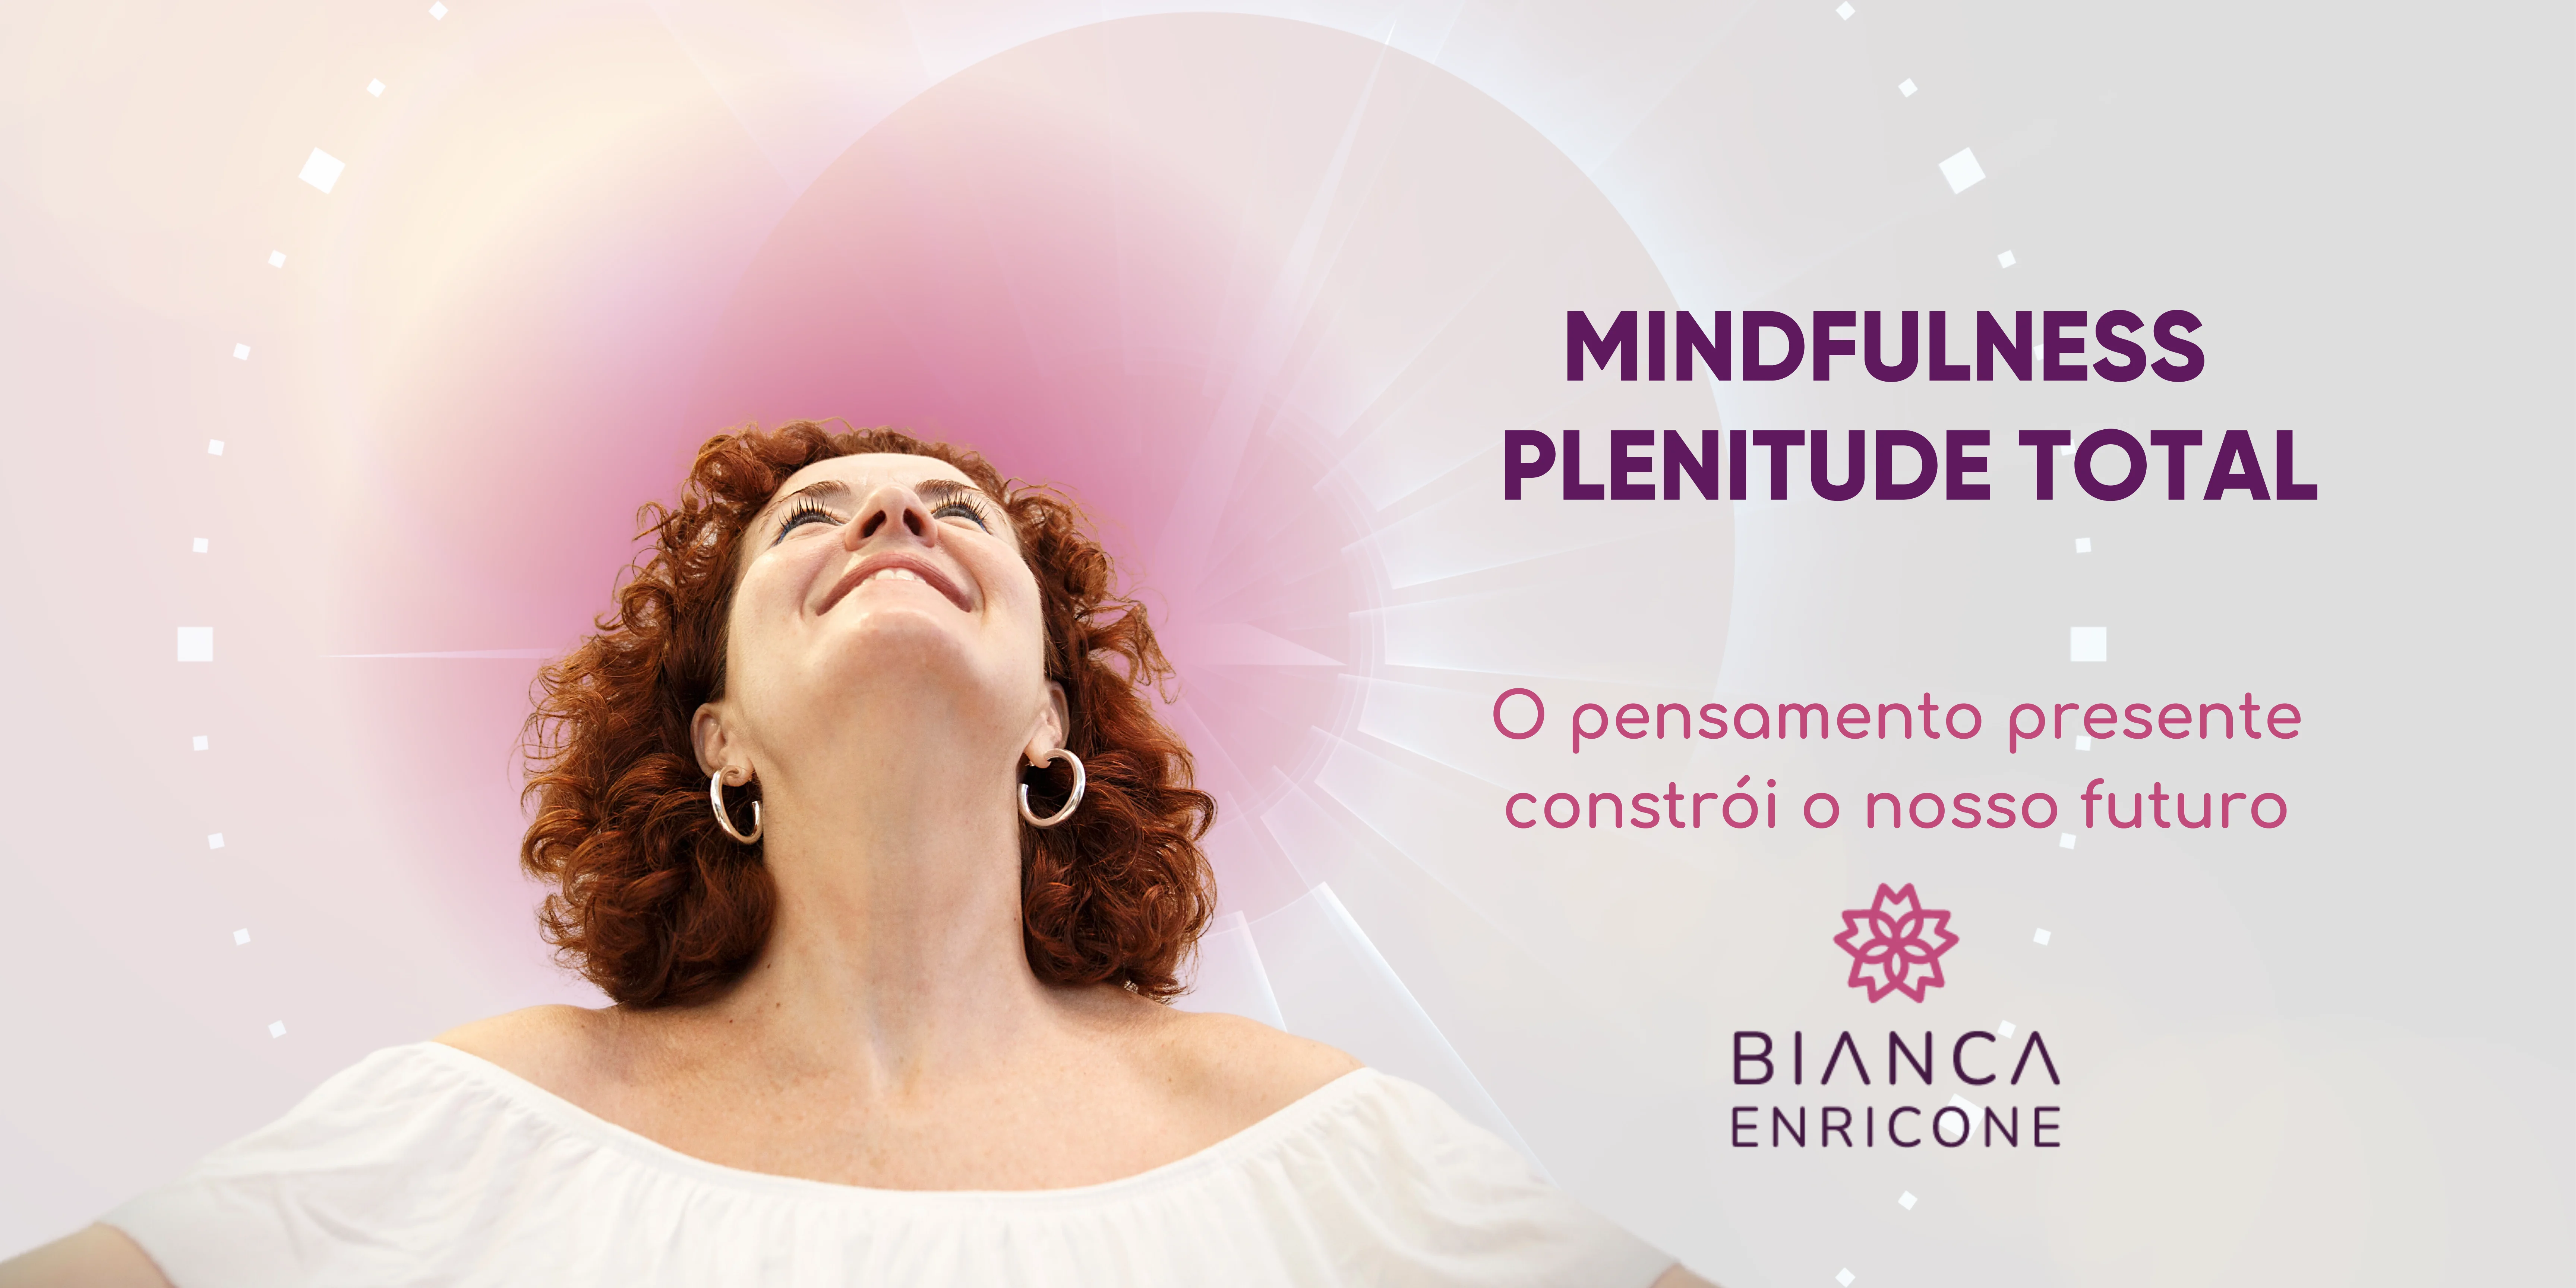 Bianca Enricone - Mindfulness - Plenitude Total - Foto Divulgação